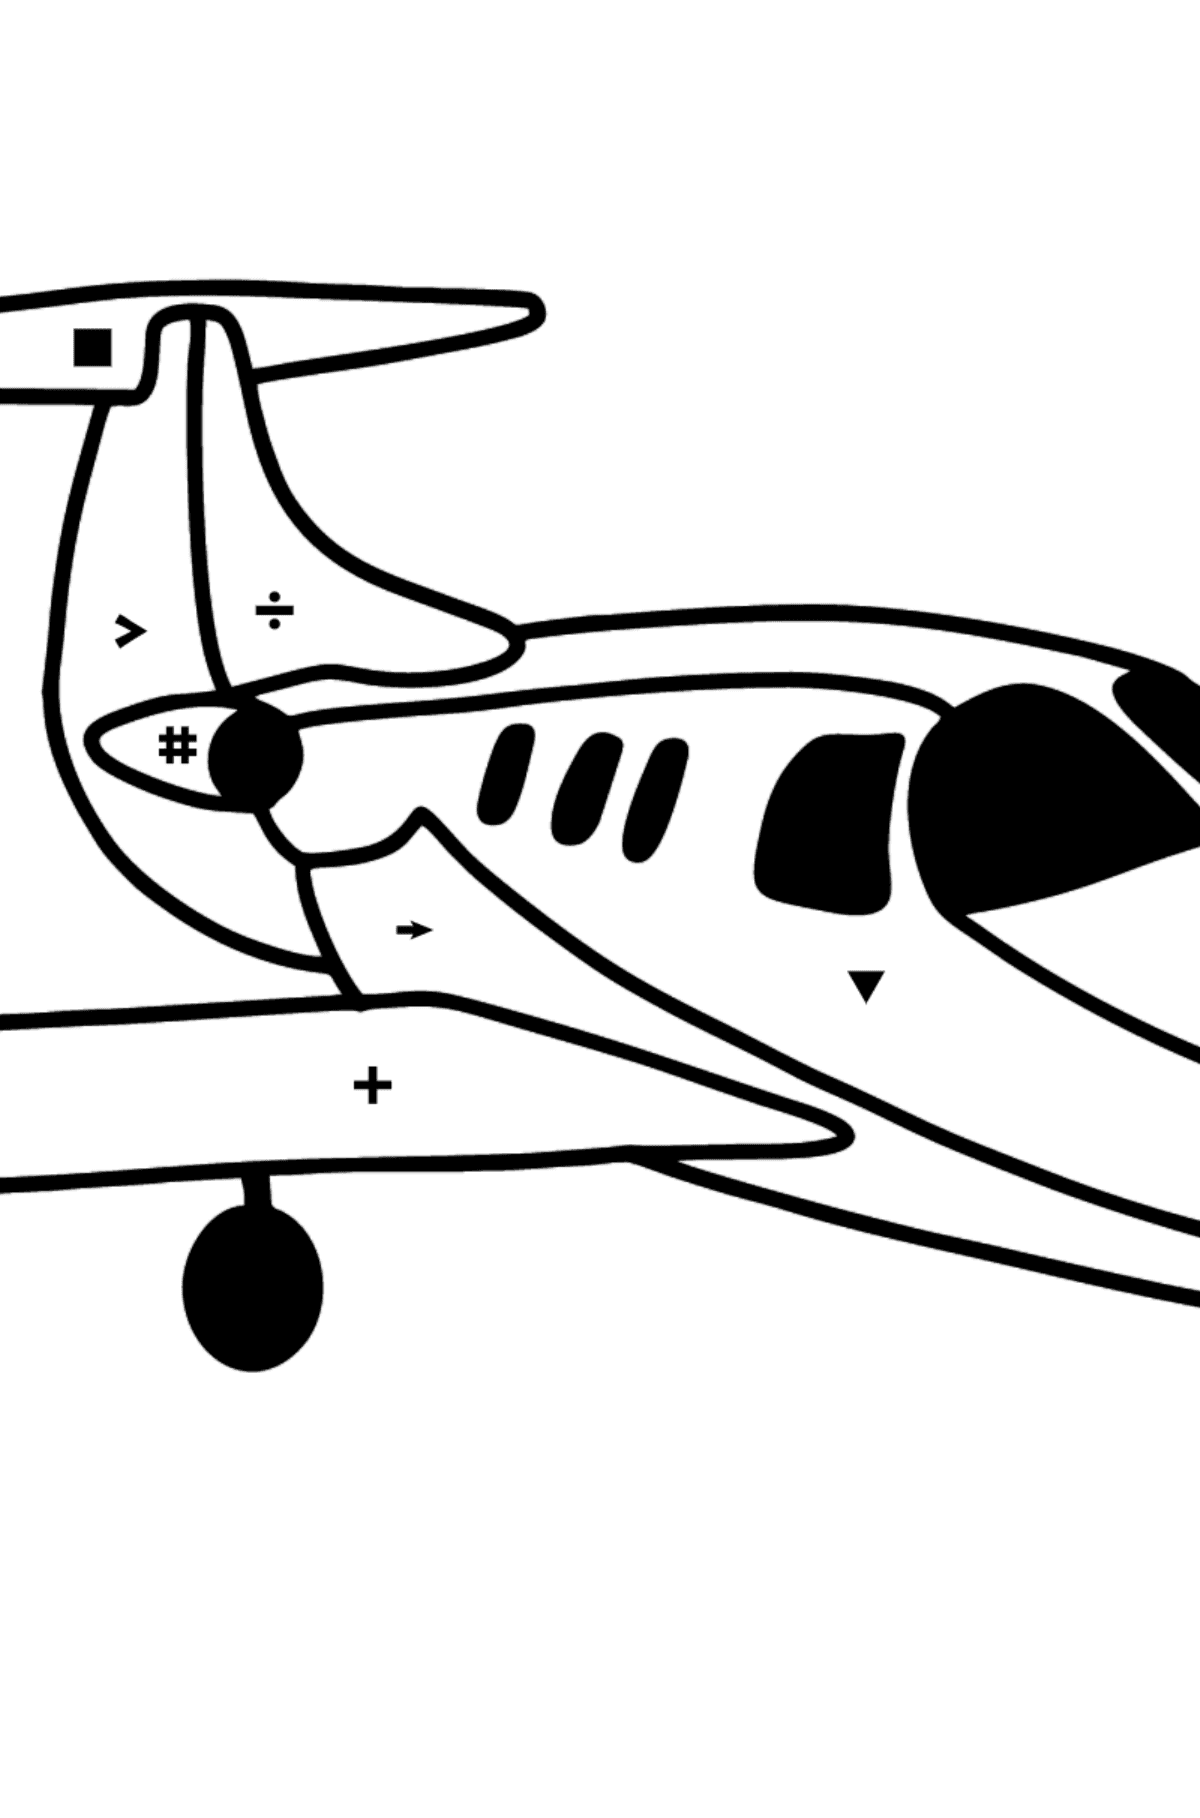 Coloriage - Jet privé - Coloriage par Symboles pour les Enfants